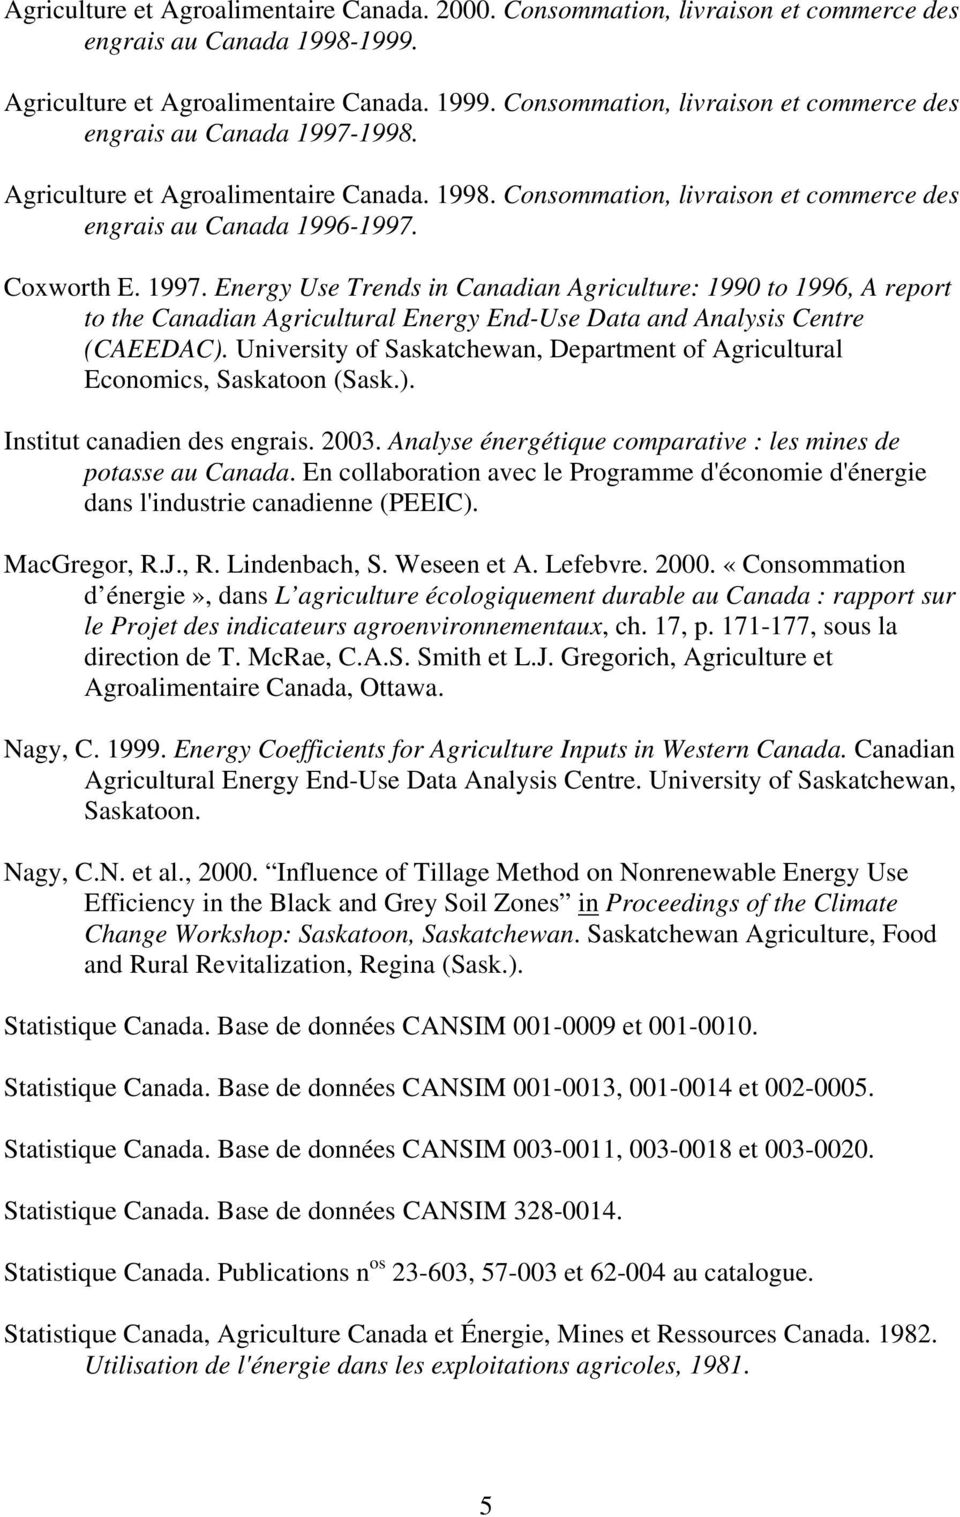 1998. Agriculture et Agroalimentaire Canada. 1998. Consommation, livraison et commerce des engrais au Canada 1996-1997. Coxworth E. 1997.